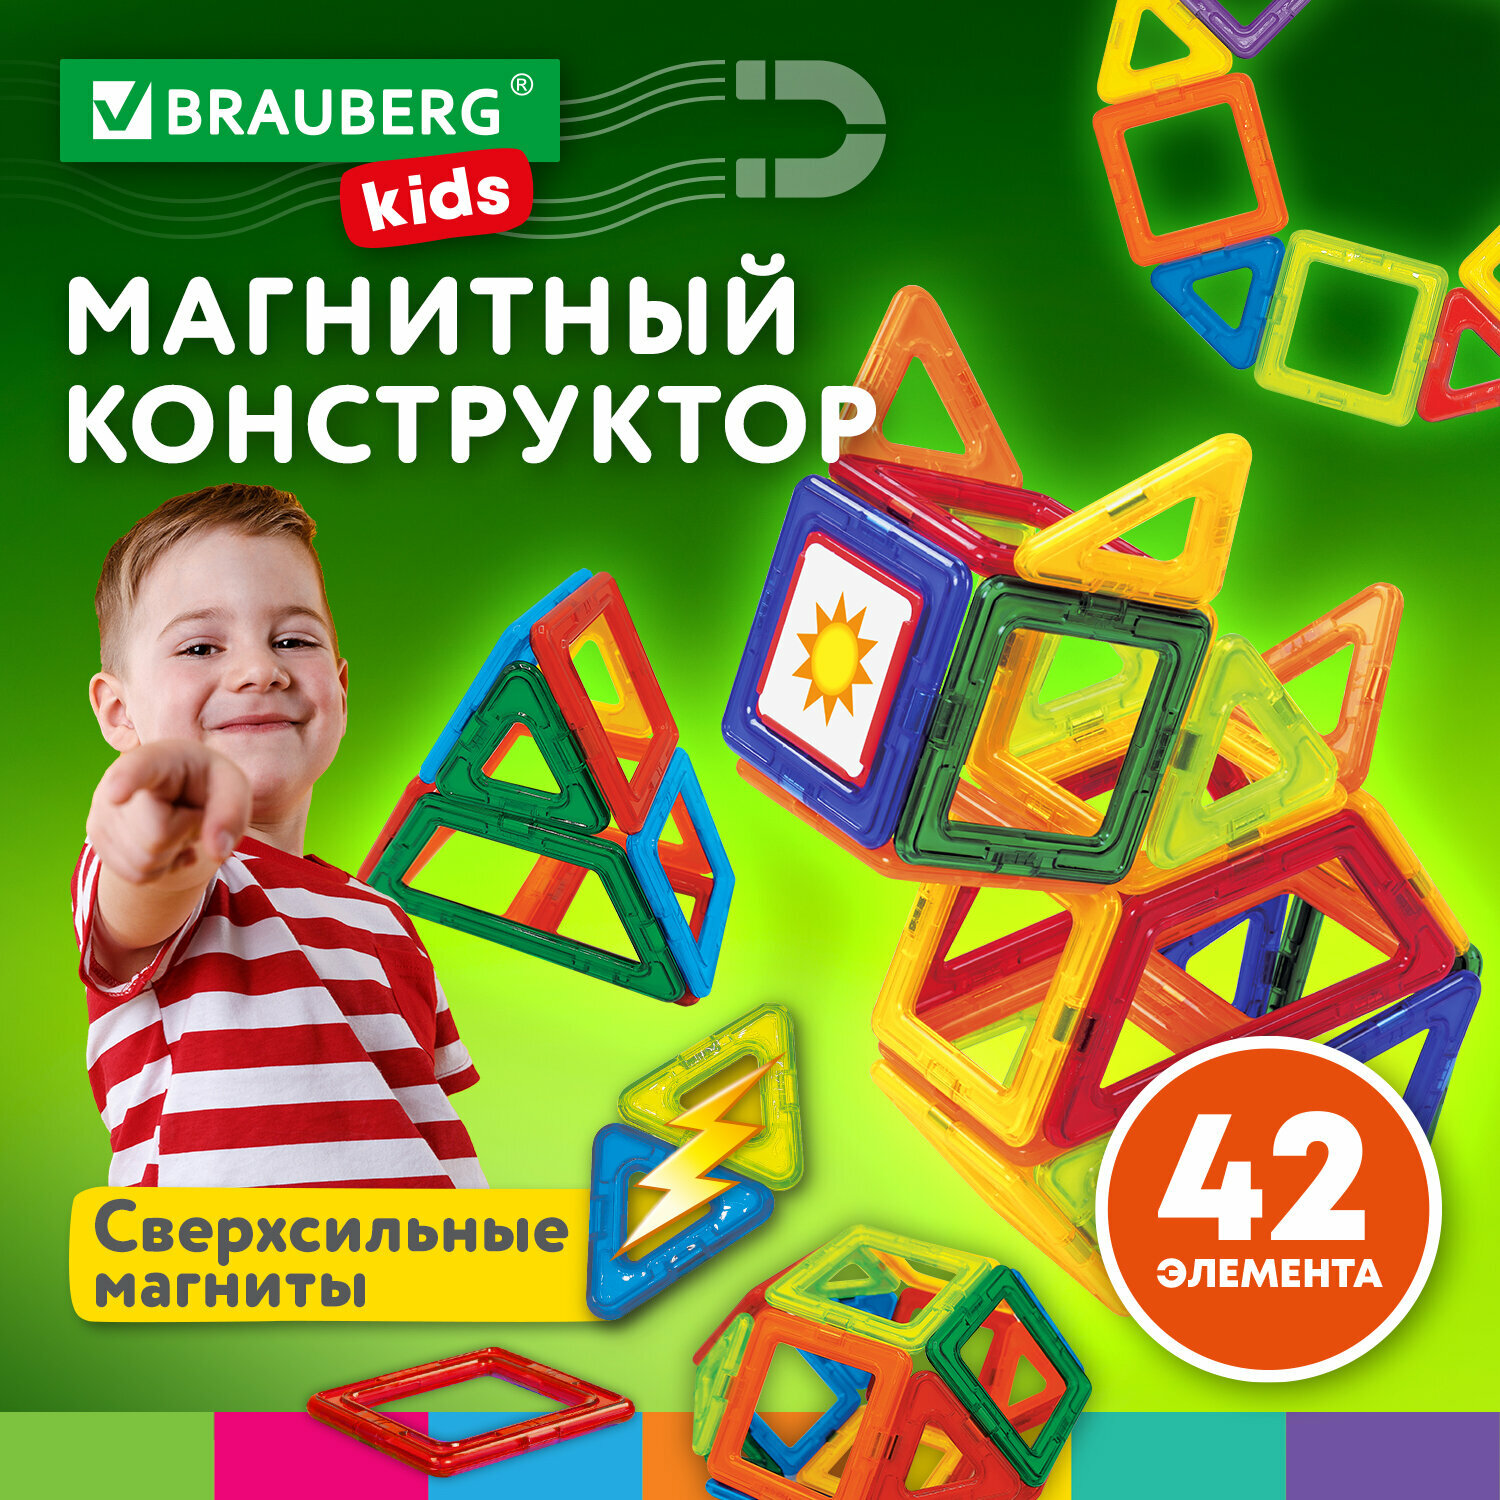 Конструктор магнитный детский развивающий для мальчиков / девочек / игрушки для детей Big Magnetic Blocks-42 42 детали Brauberg Kids